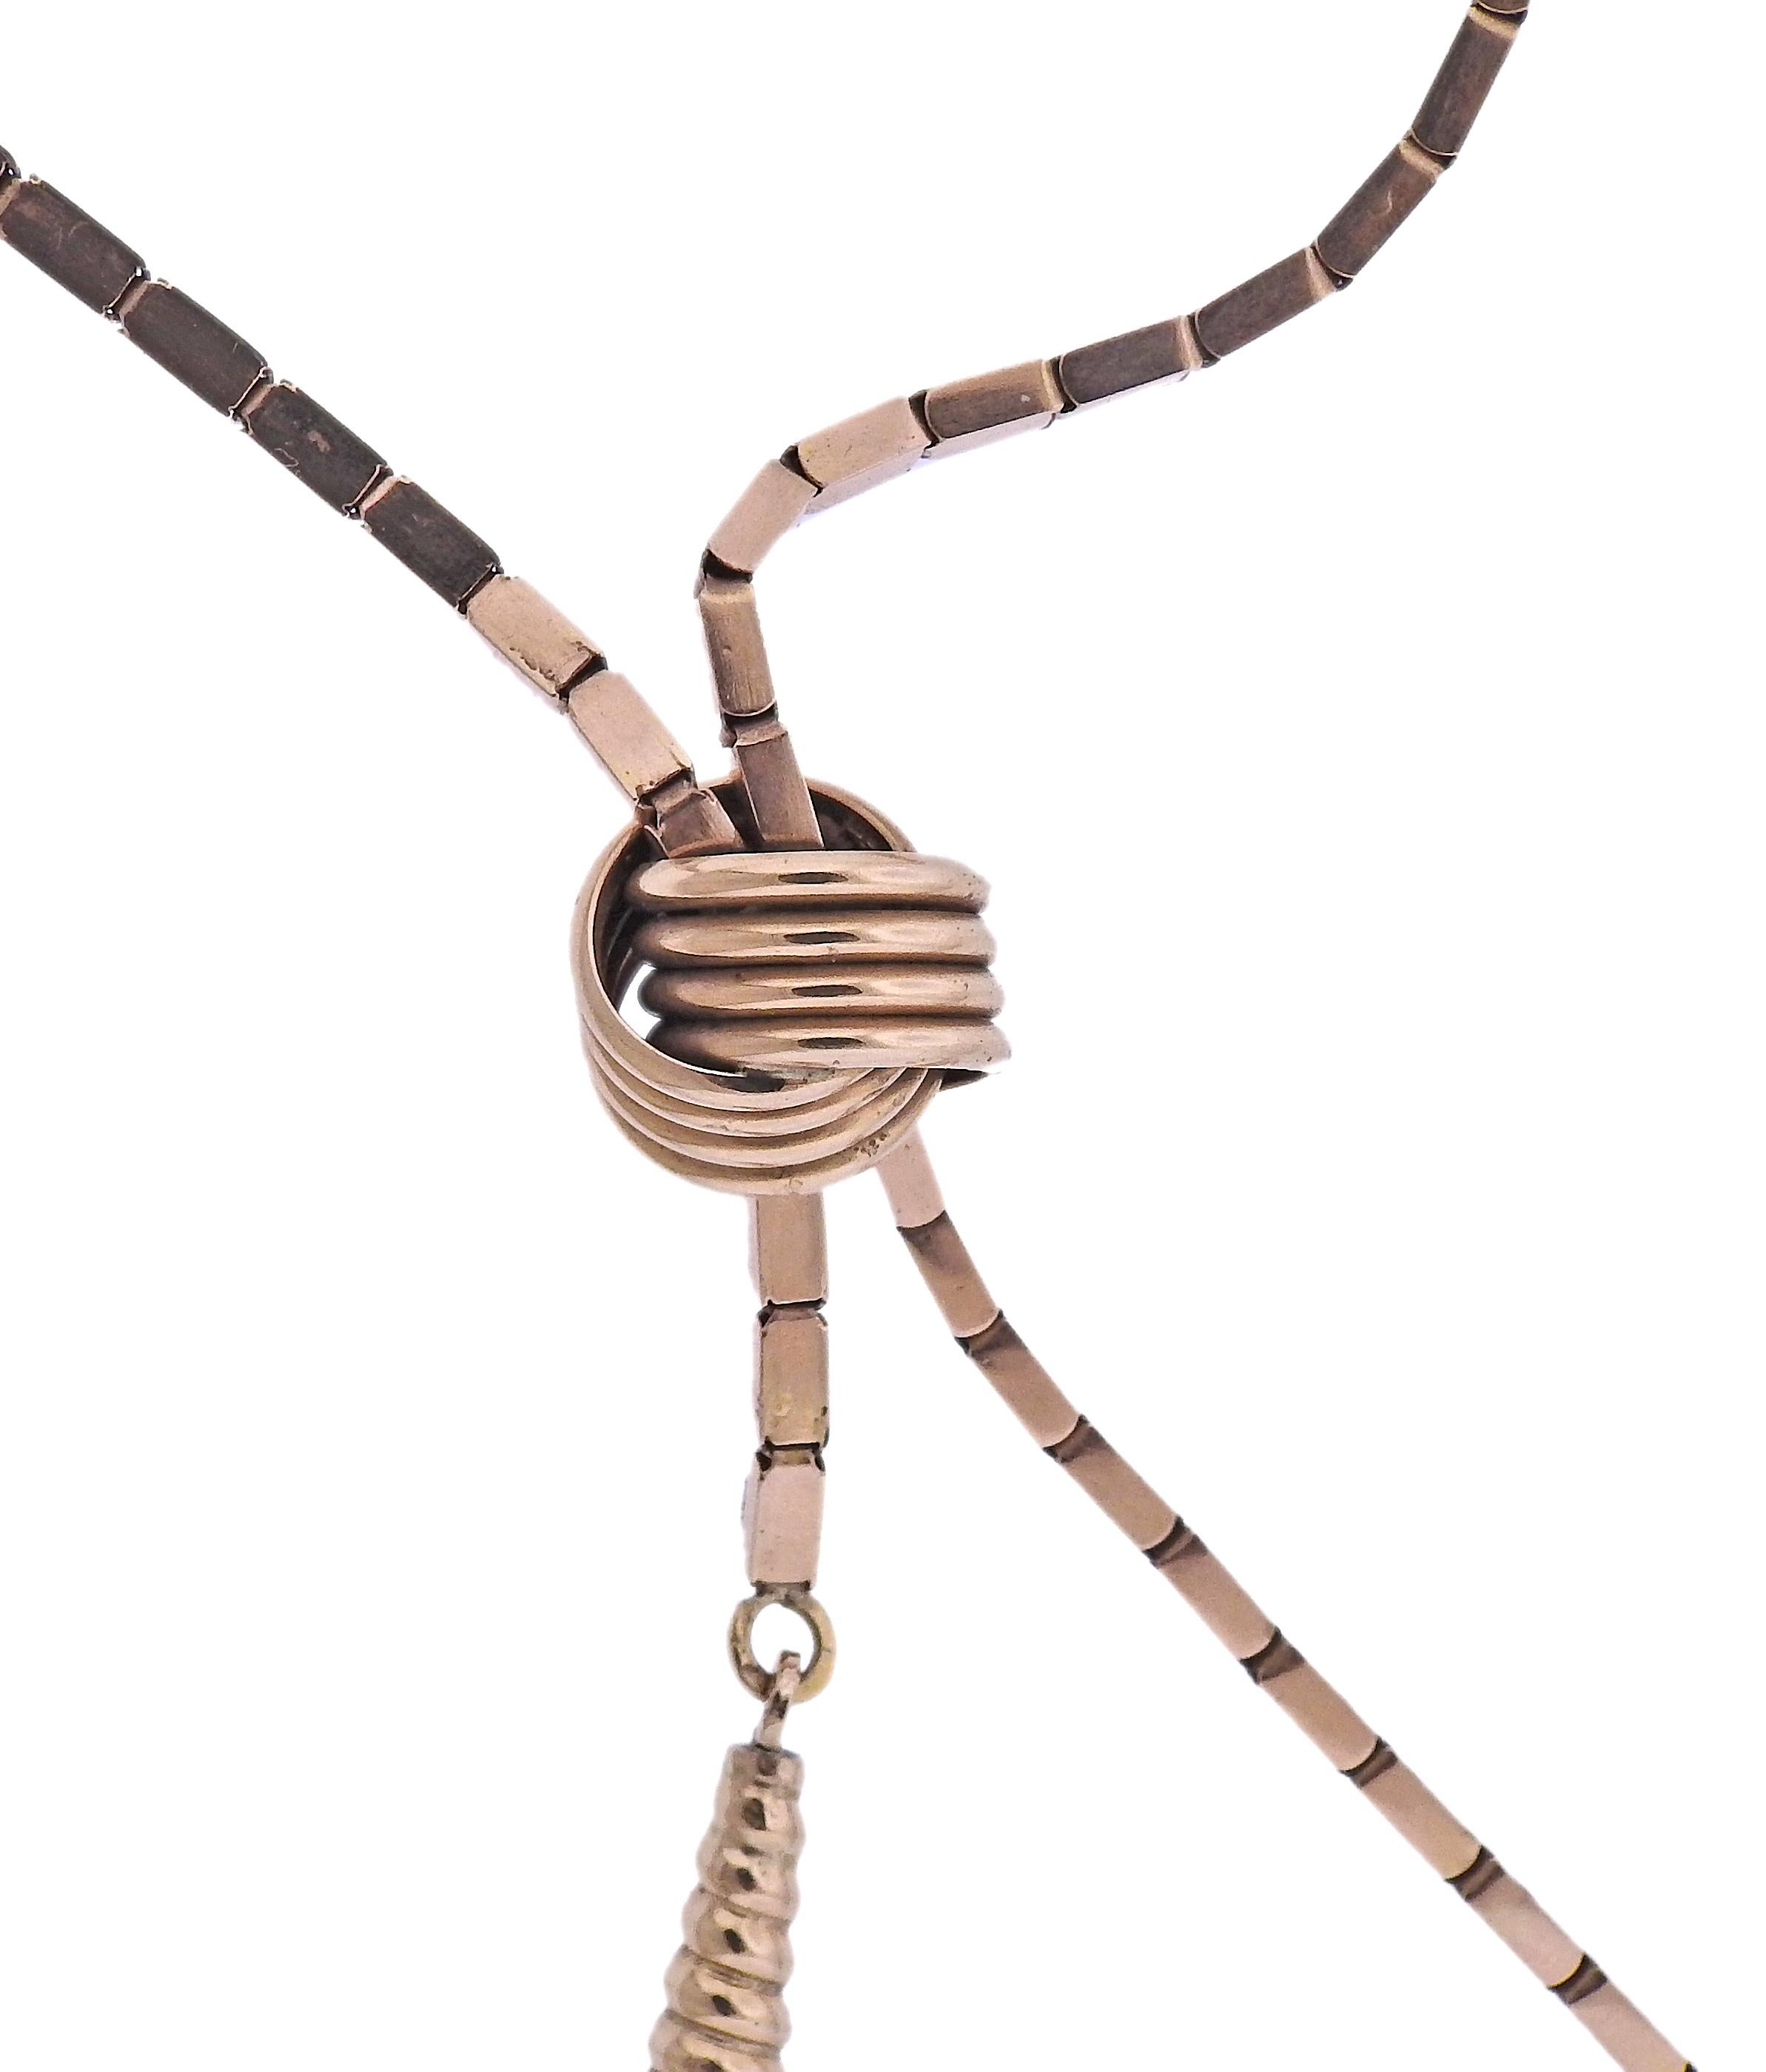 Sautoir rétro en or rose 14k avec pendentif pompon, avec nœud coulissant. Le collier fait 27